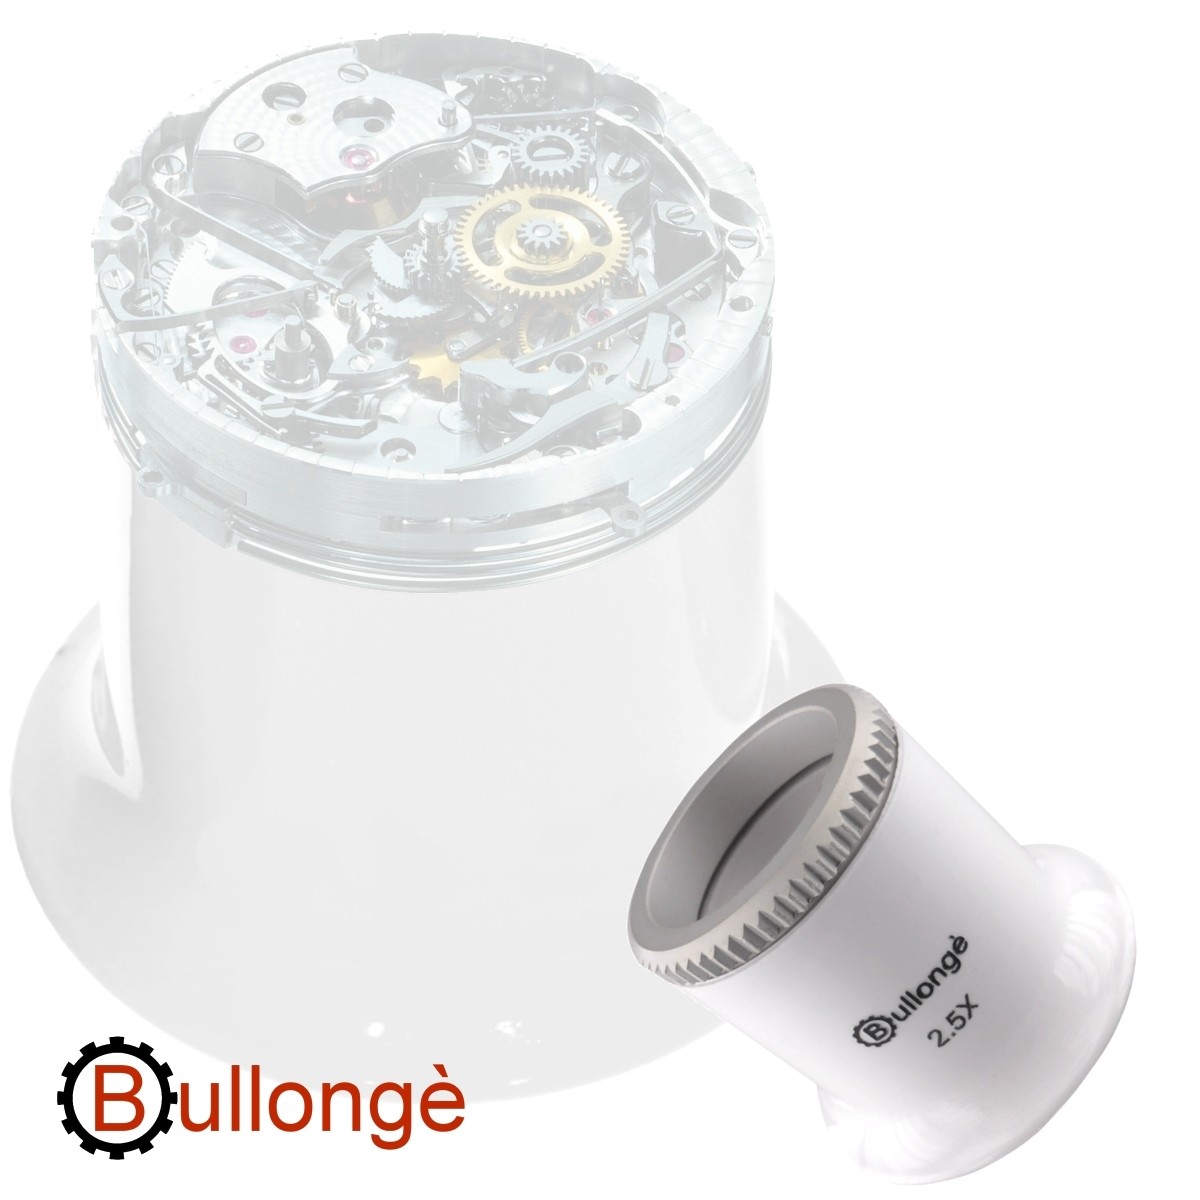 Eye-Loupe Magnifier BULLONGÈ TB PEARL-WHITE 2.5x - watchmaker eye loupe for  repair job